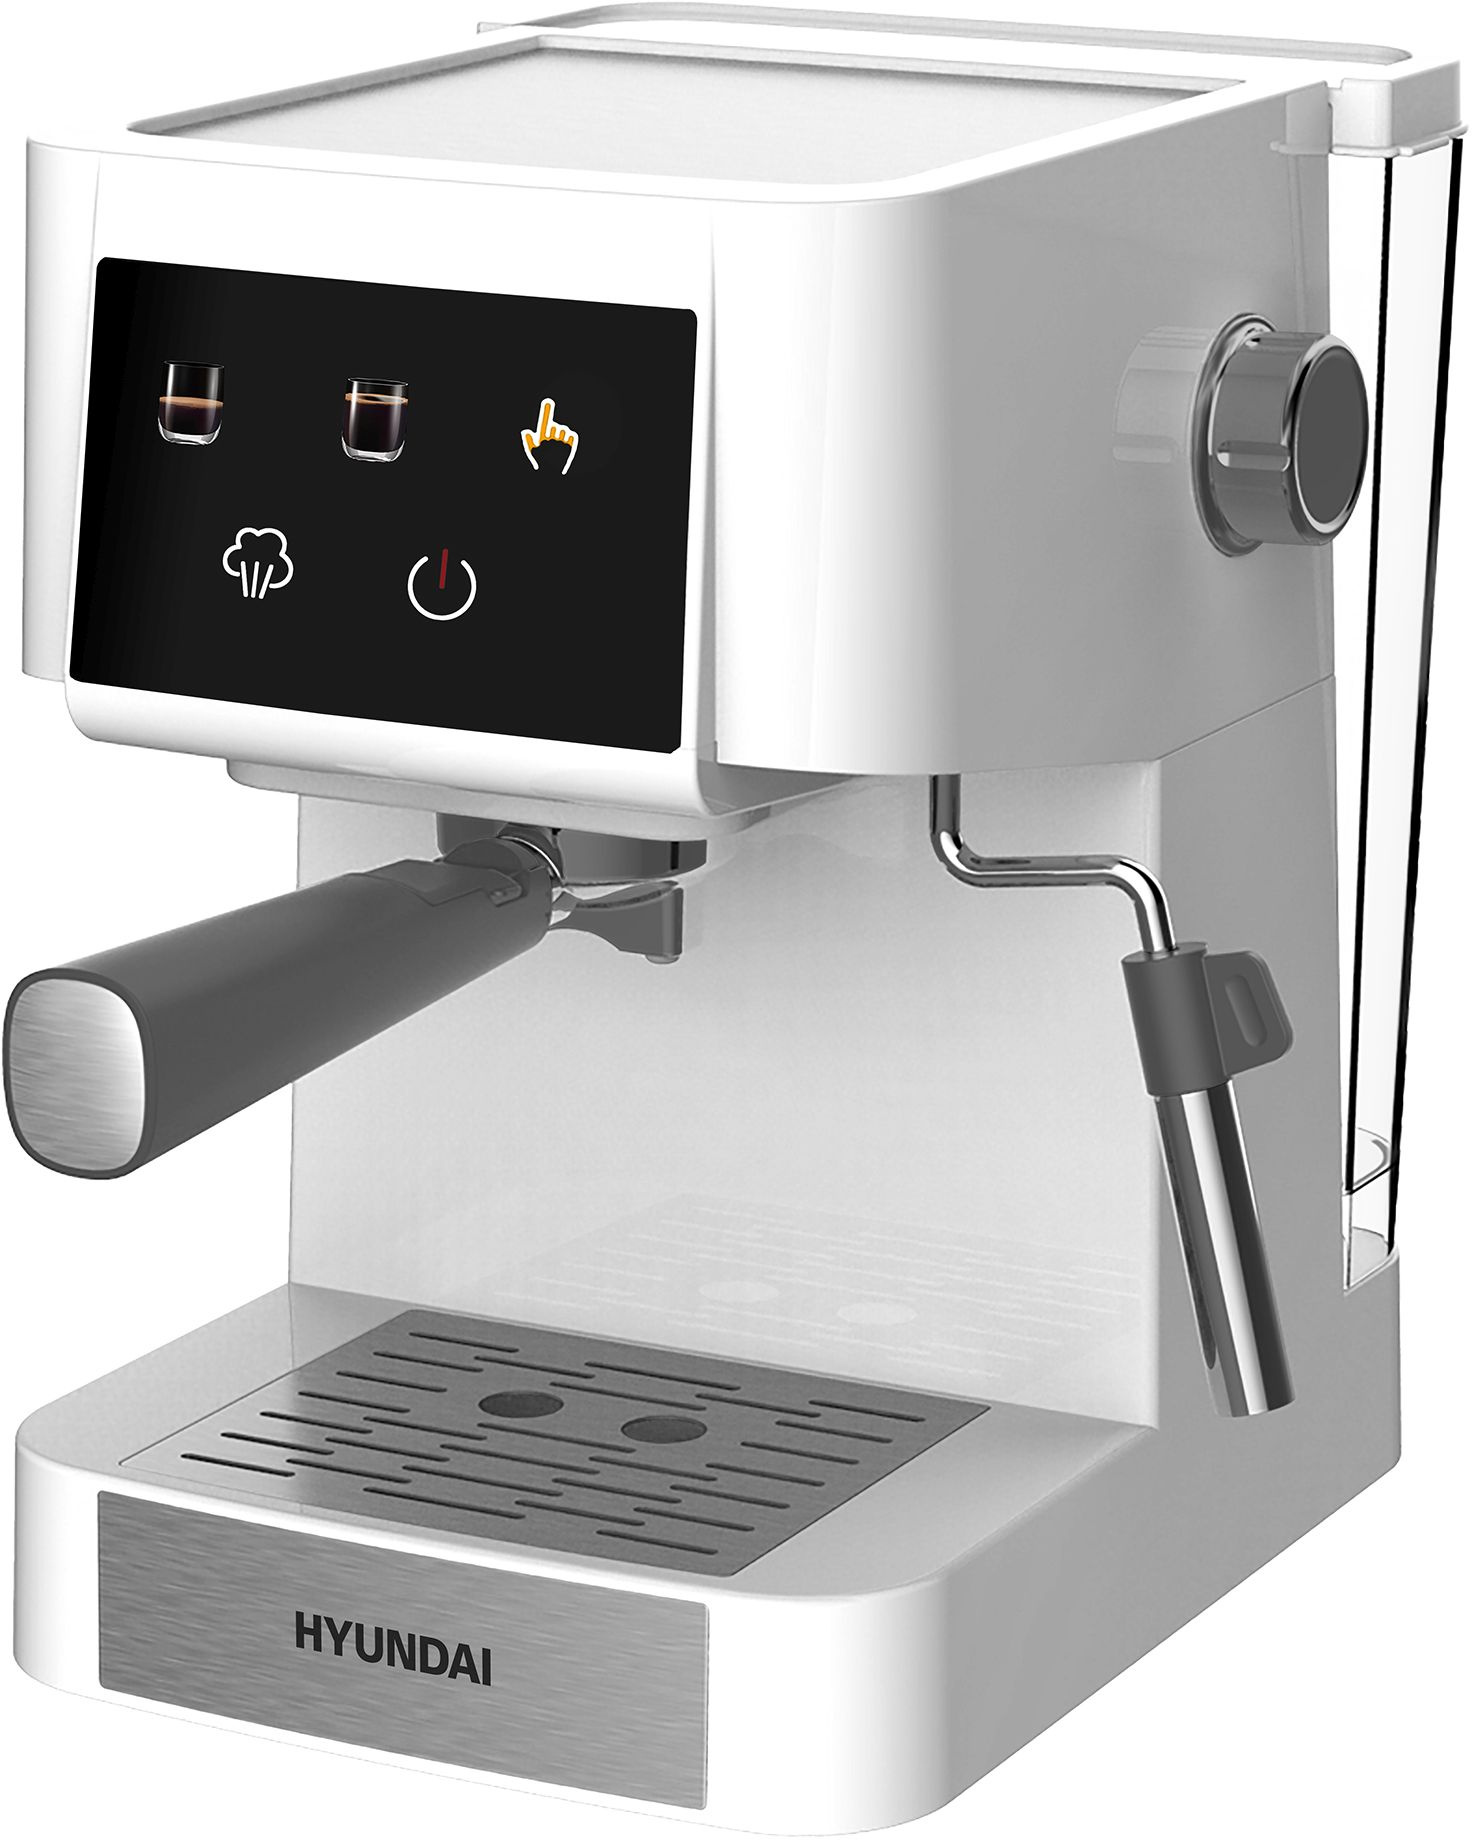 Кофеварка рожковая Hyundai HEM-3203, 1 кВт, кофе молотый, 1.5 л, ручной капучинатор, дисплей, белый/серебристый